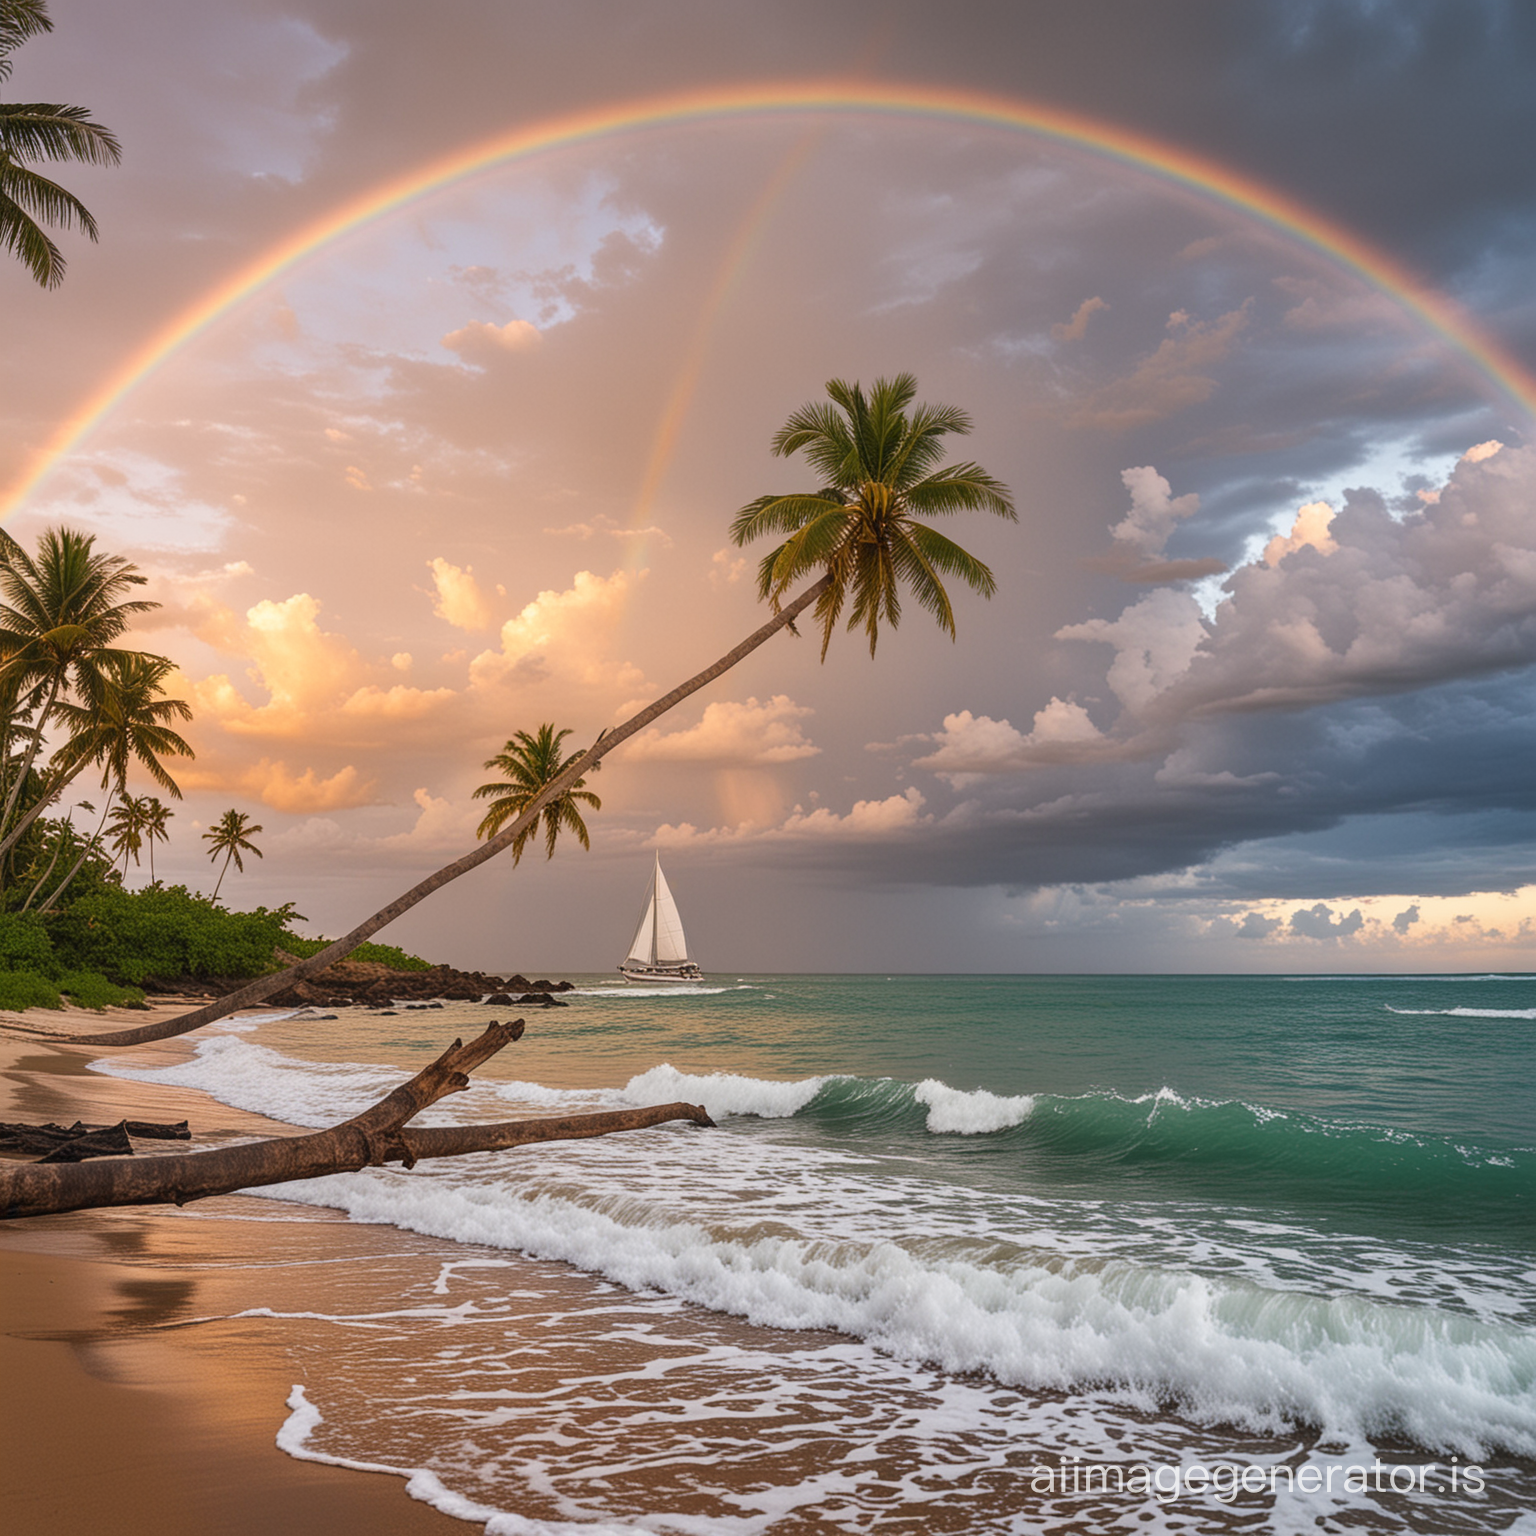 海边，沙滩，椰子树，夕阳，白云，彩虹，帆船，海浪，拄着拐杖的长者